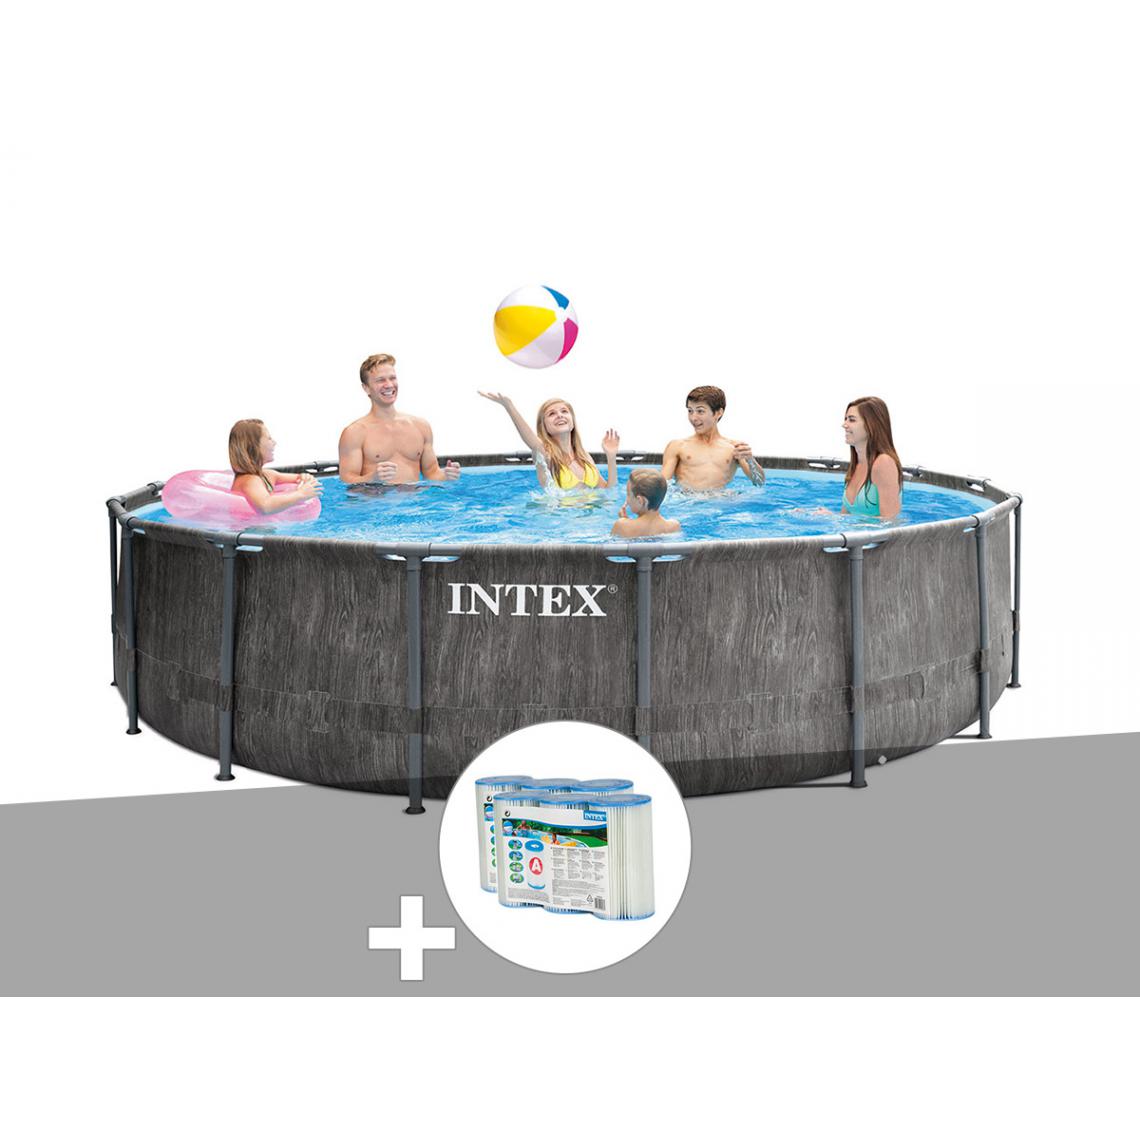 Intex - Kit piscine tubulaire Intex Baltik ronde 4,57 x 1,22 m + 6 cartouches de filtration - Piscine Tubulaire